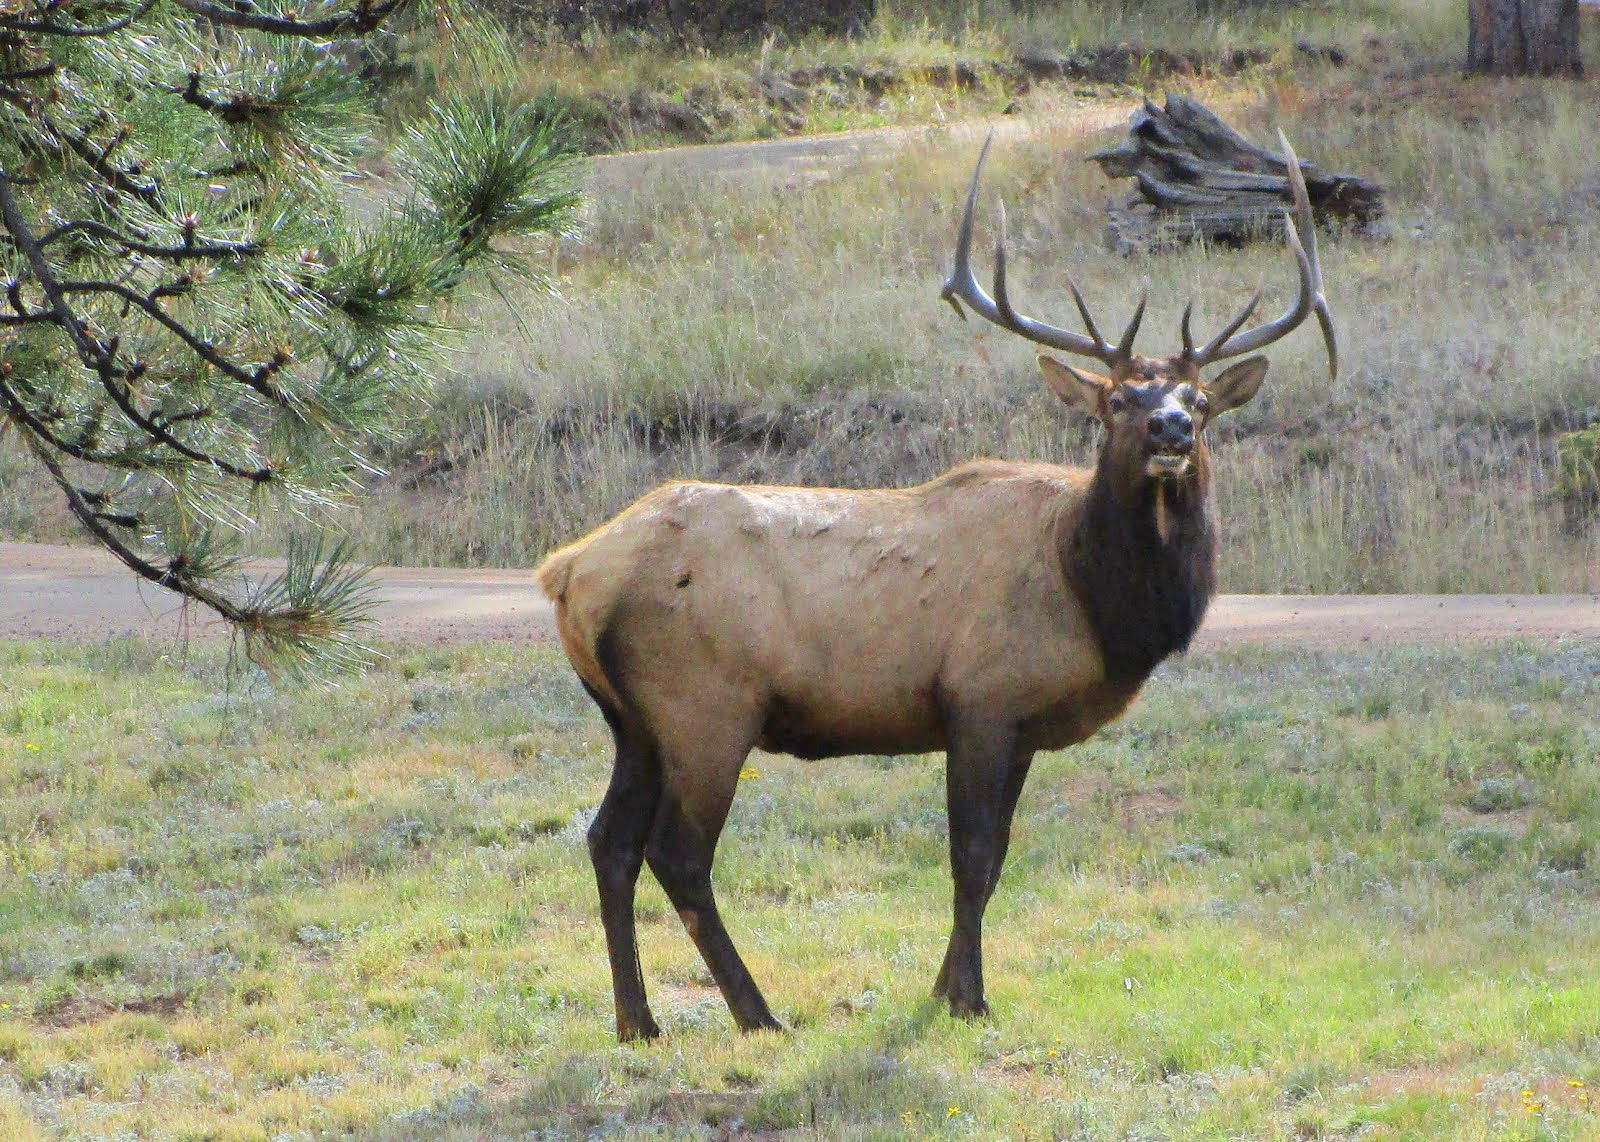 Bull Elk in our Yard